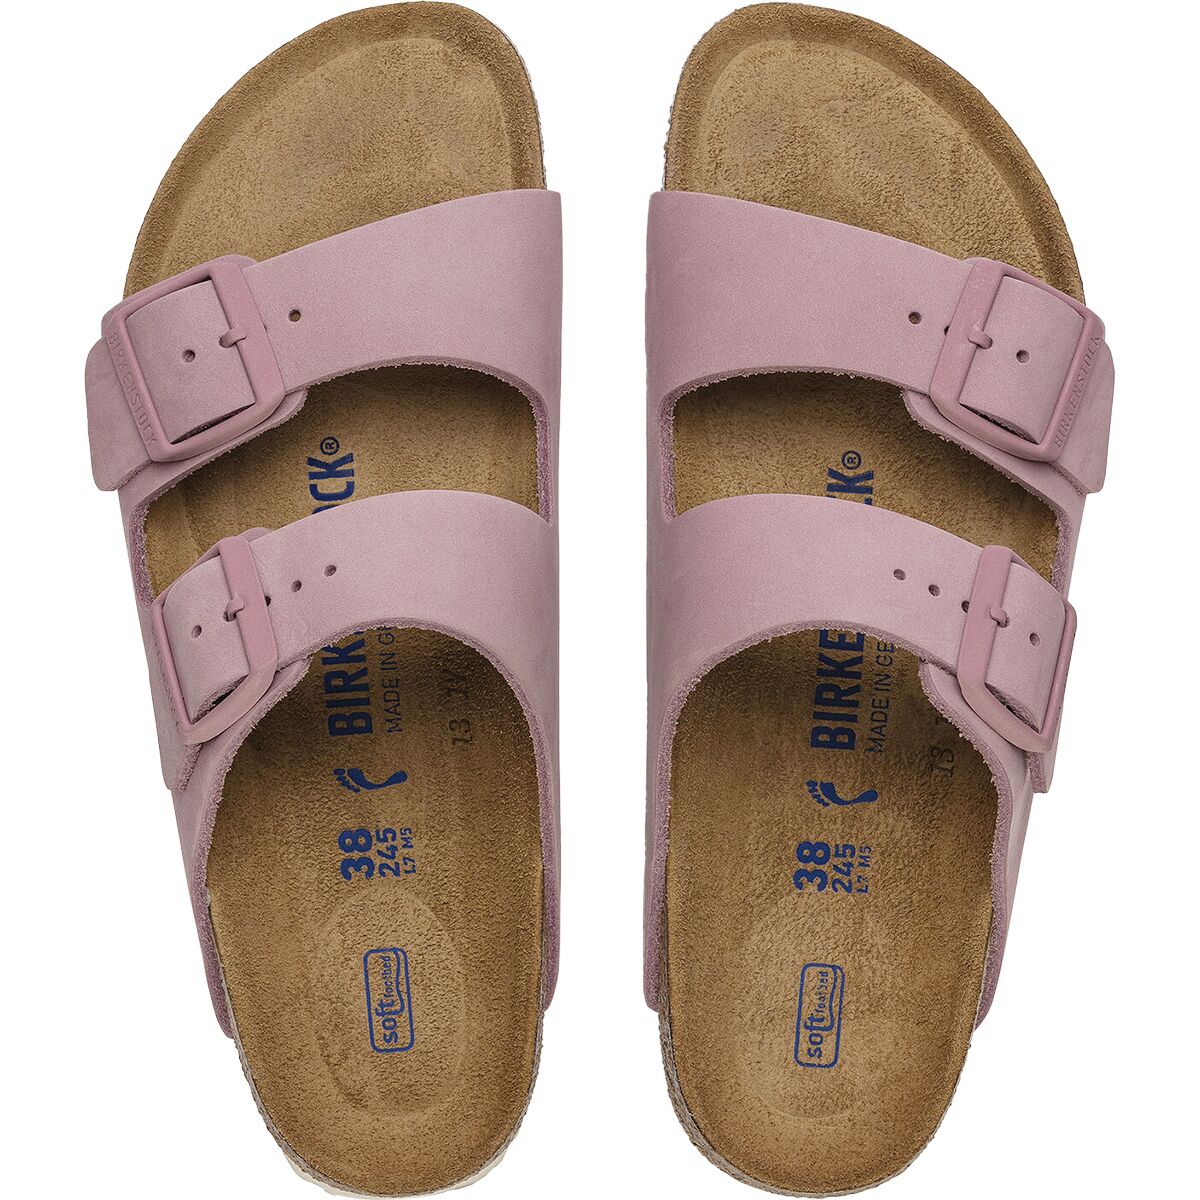 Birkenstock Arizona Soft Footbed Sandal - Women's - Footwear